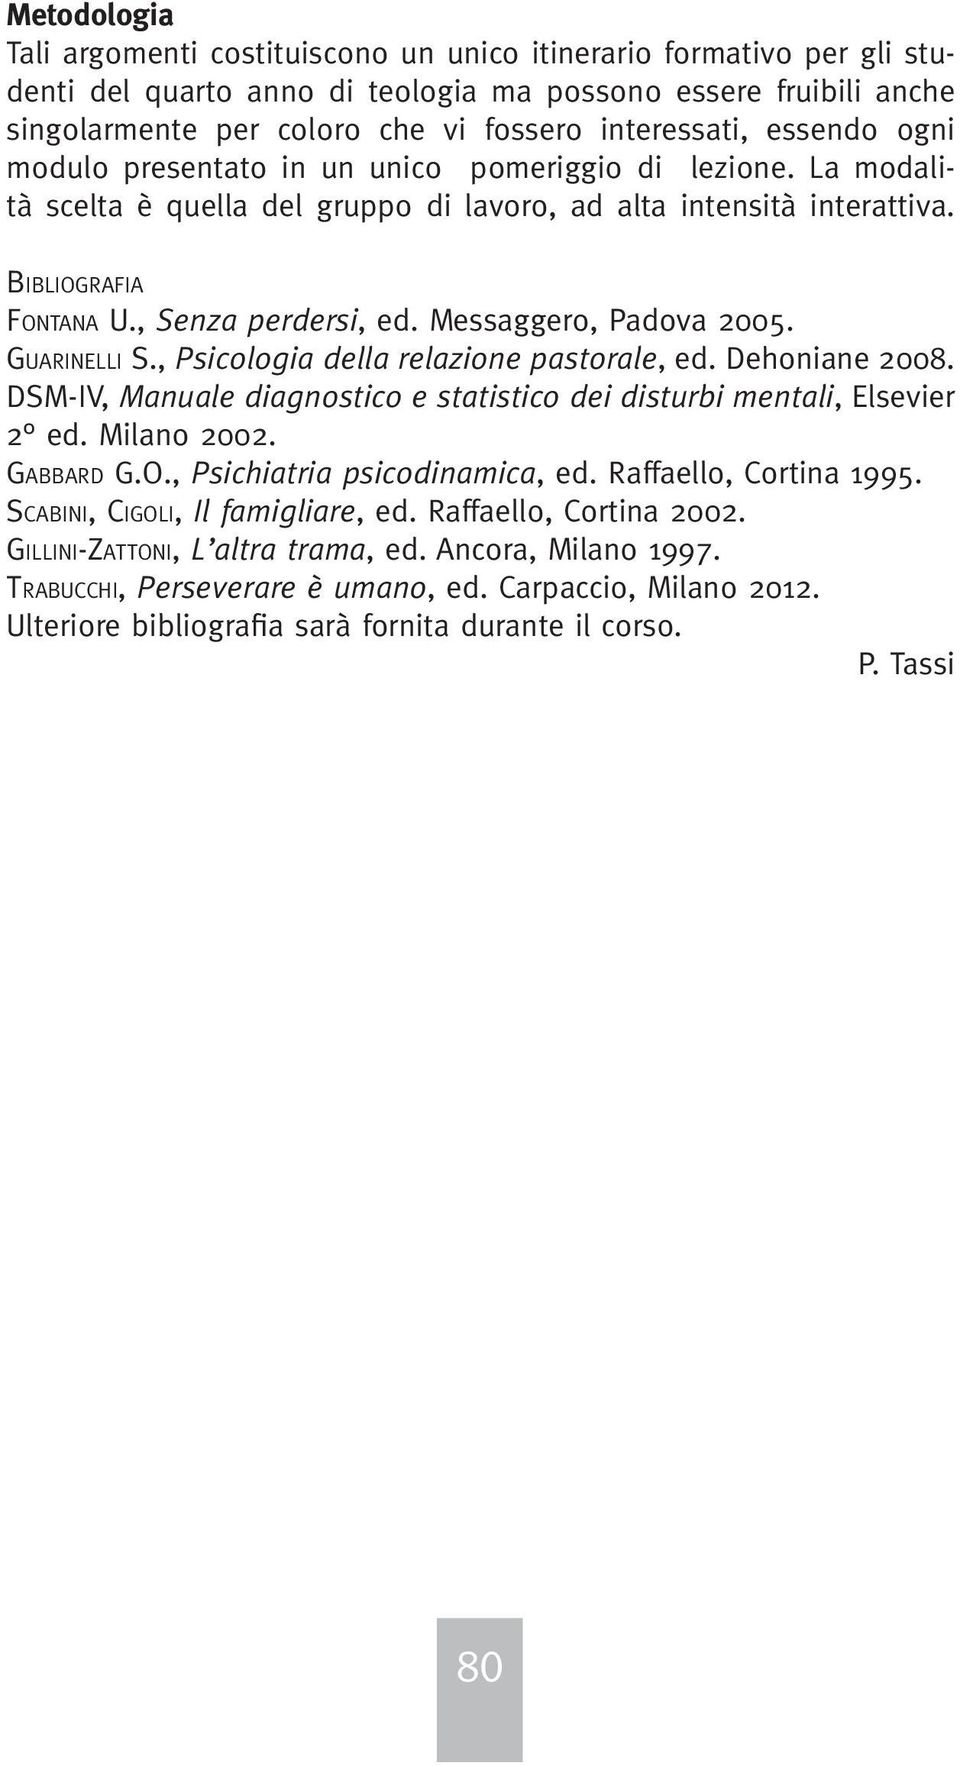 Messaggero, Padova 2005. Guarinelli S., Psicologia della relazione pastorale, ed. Dehoniane 2008. DSM-IV, Manuale diagnostico e statistico dei disturbi mentali, Elsevier 2 ed. Milano 2002. Gabbard G.